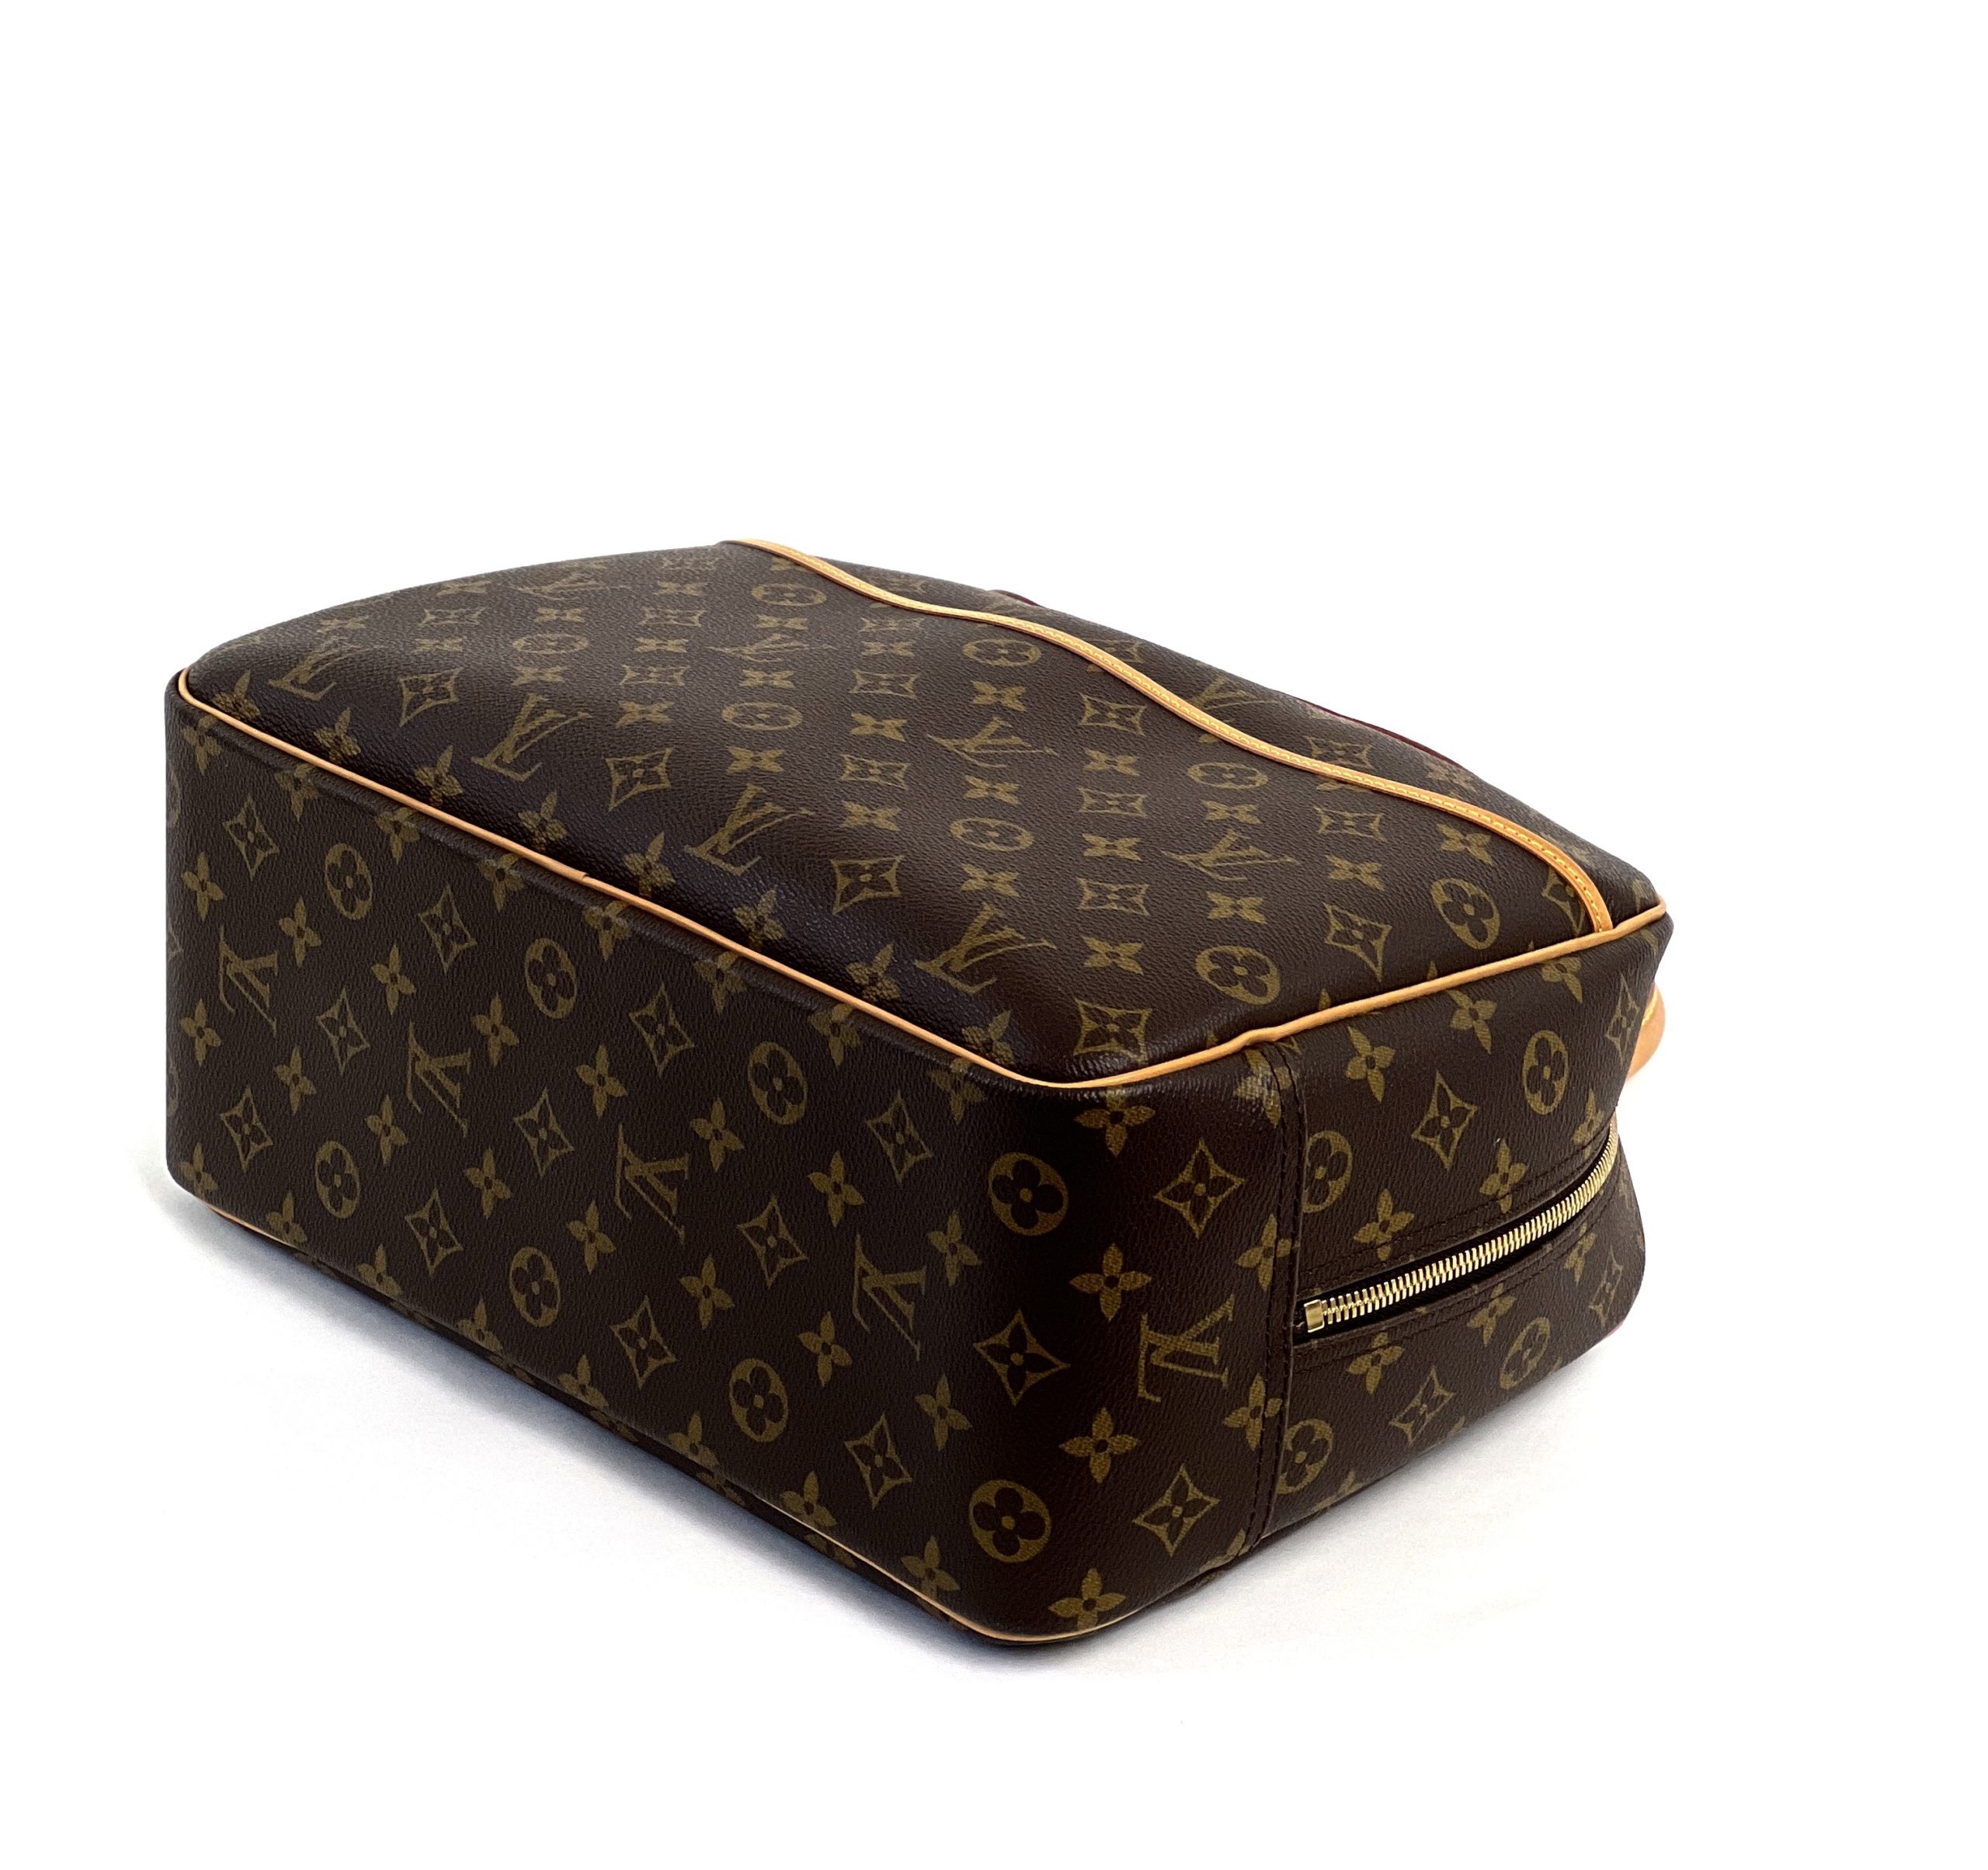 Louis Vuitton Monogram Deauville M47270 Bag Handbag Unisex